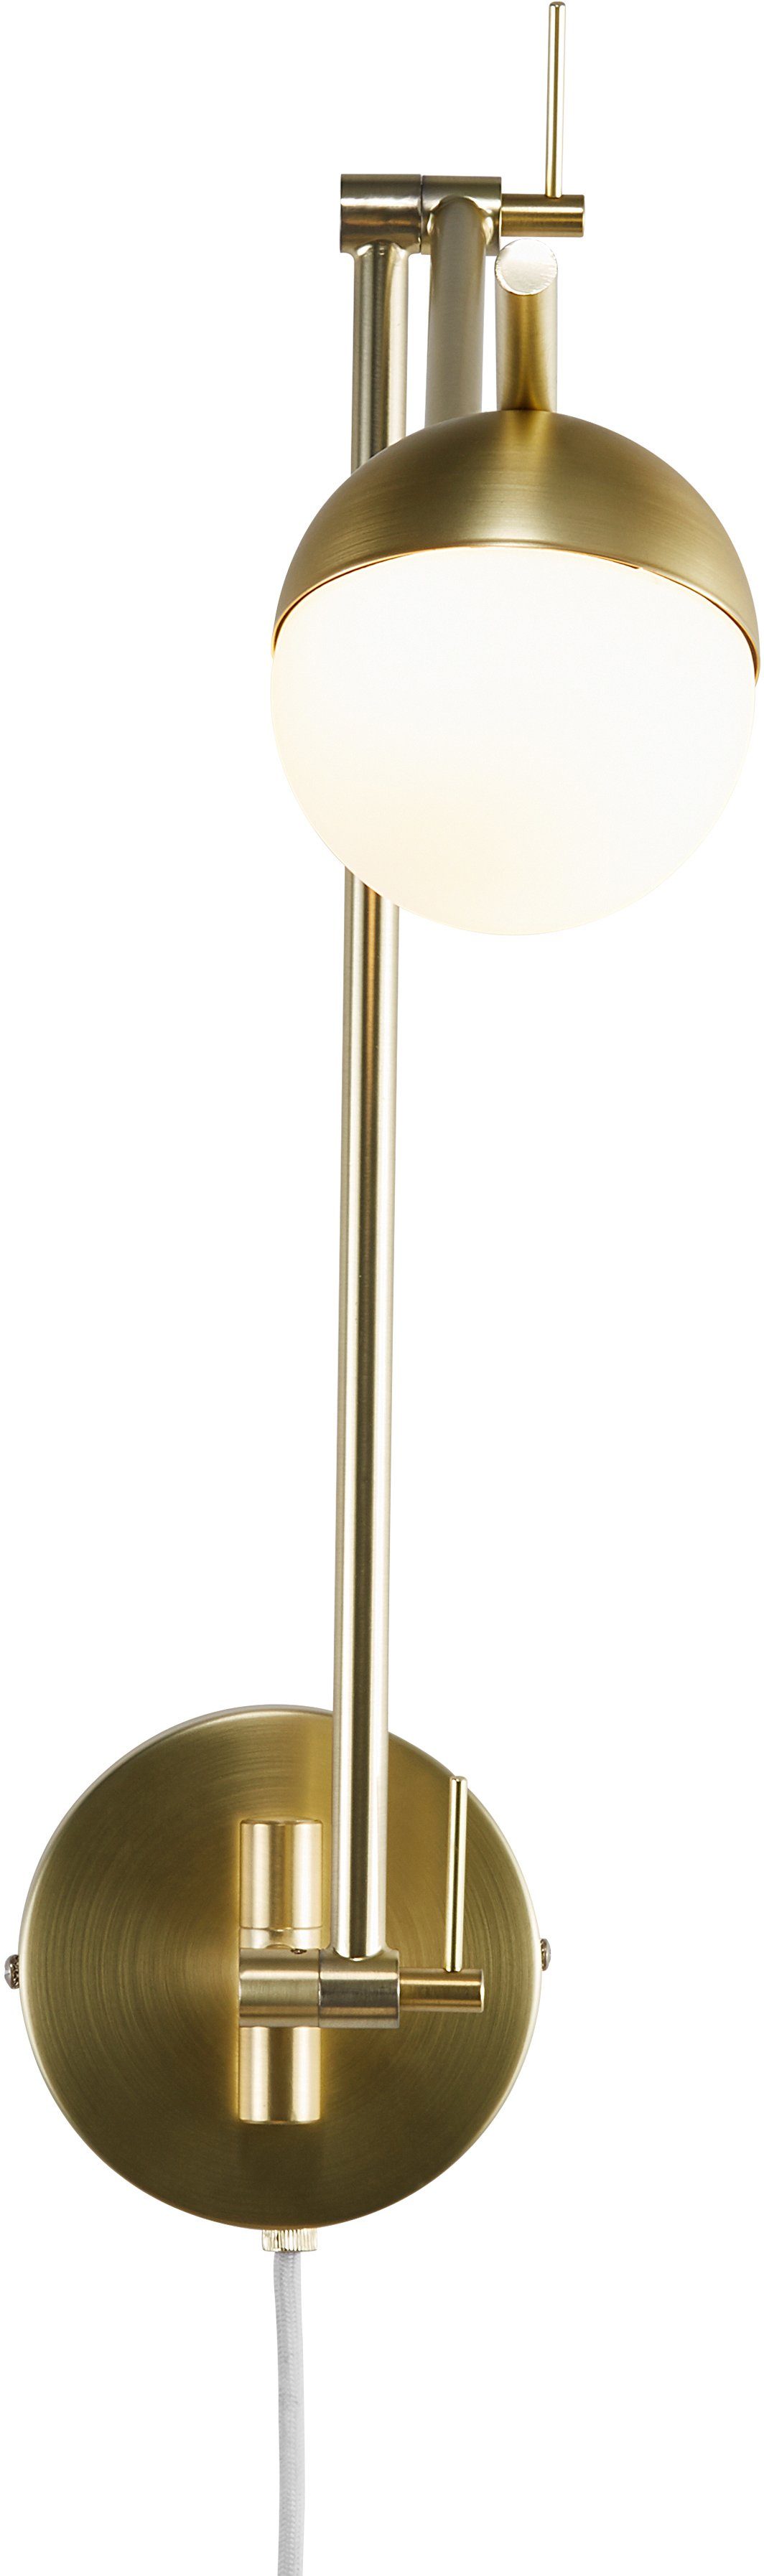 nordlux wandlamp contina textiel kabel, met de mond geblazen opaal glas goud